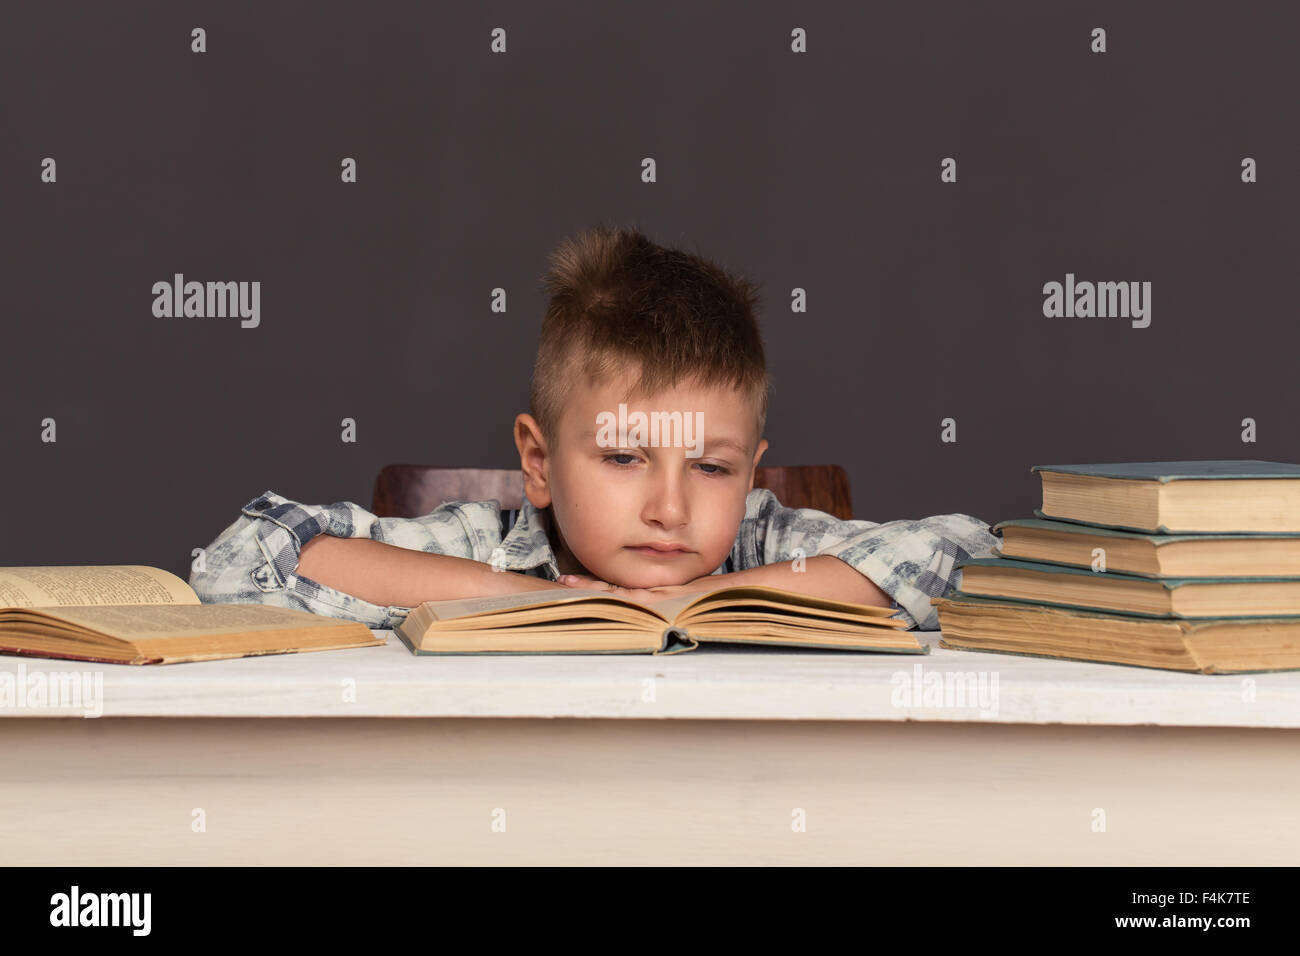 Мальчик читает книгу в коричневых тонах.